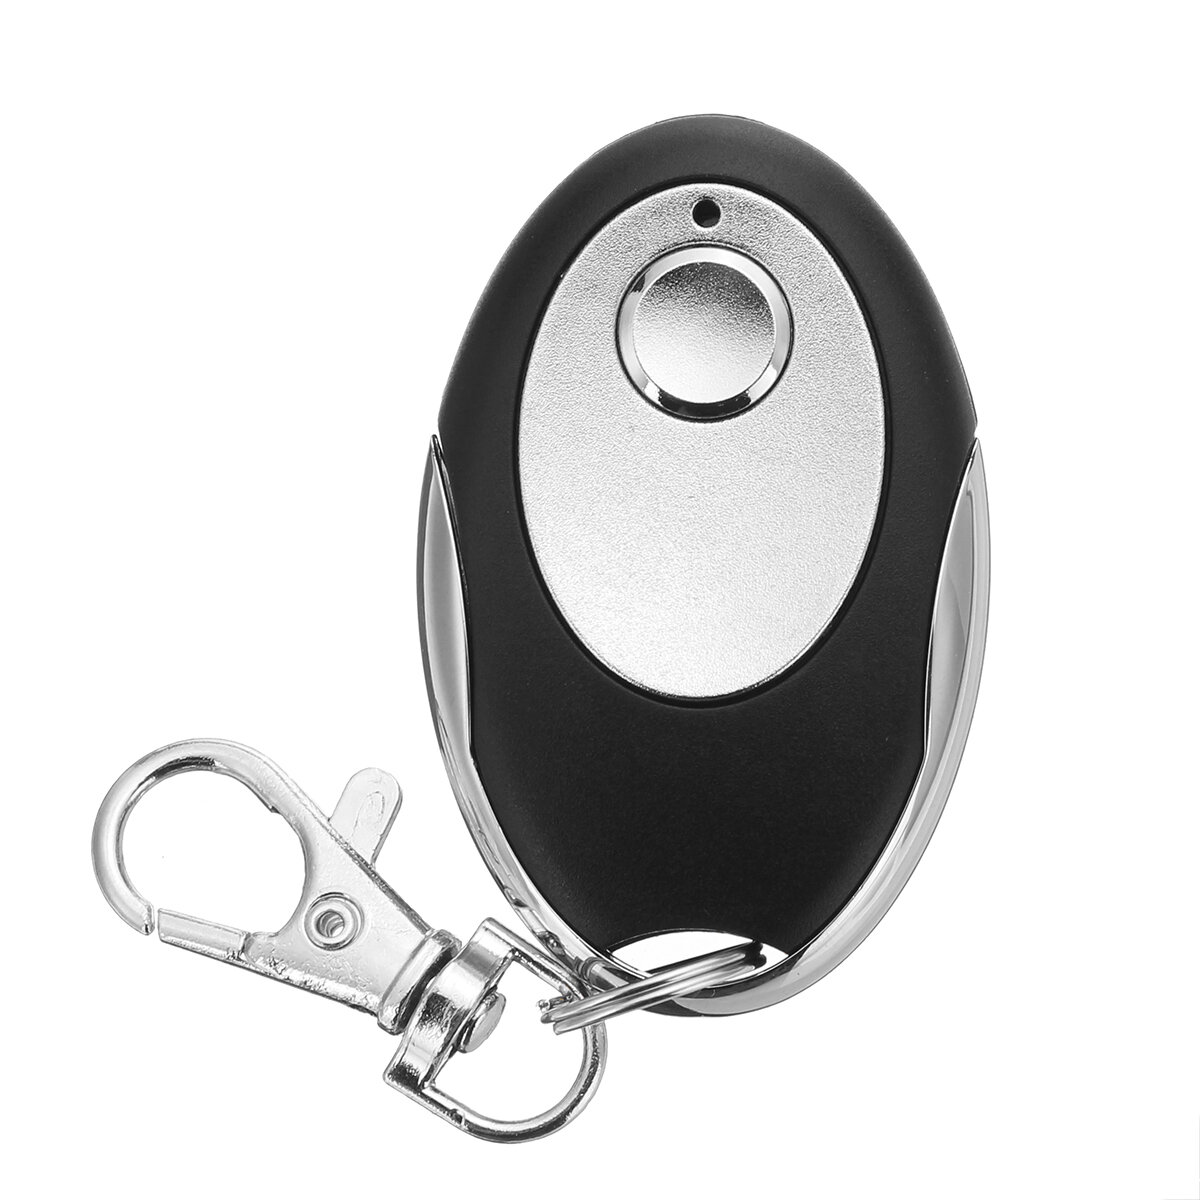 

1B Ключ для открывания двери гаража Дистанционный Желтая кнопка обучения для Liftmaster 891LM 893LM